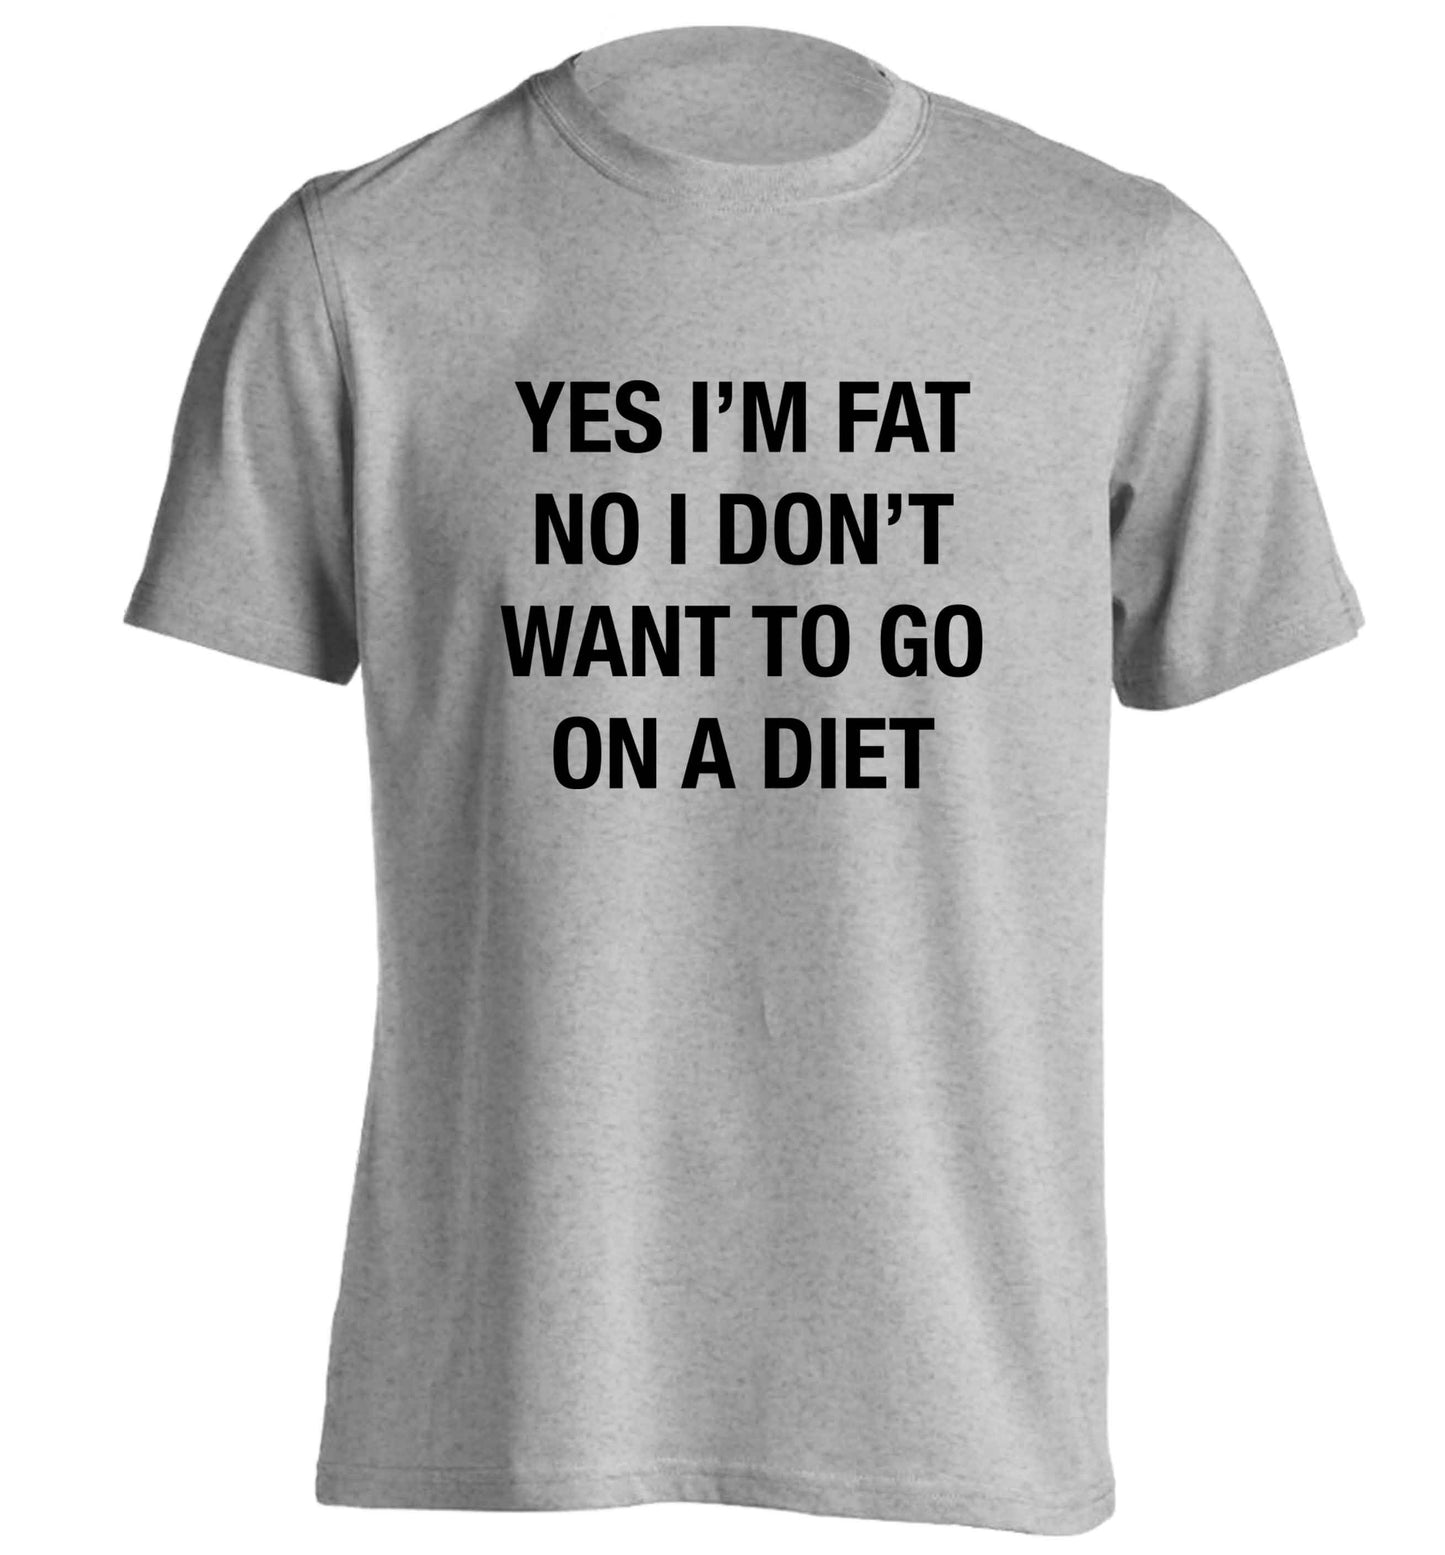 Yes I'm fat, no I don't want to go on a diet adults unisex grey Tshirt 2XL